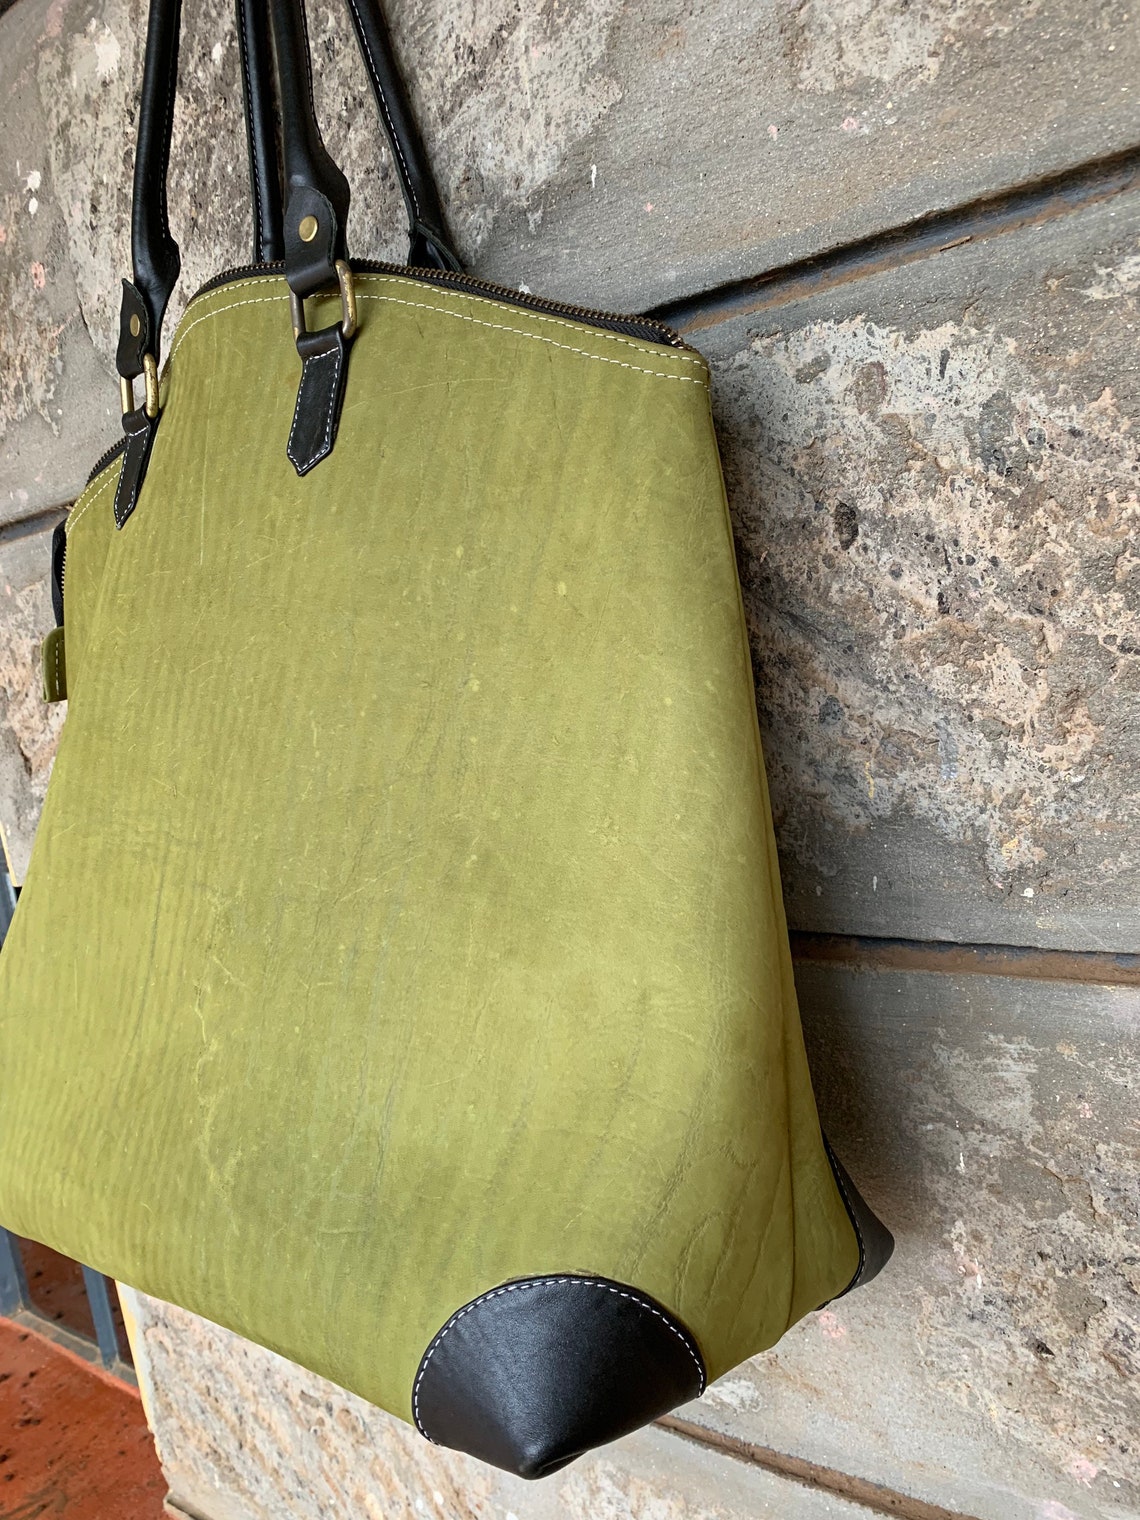 Emerald green handbag Personalized Bridesmaid Gifts Tote | Etsy